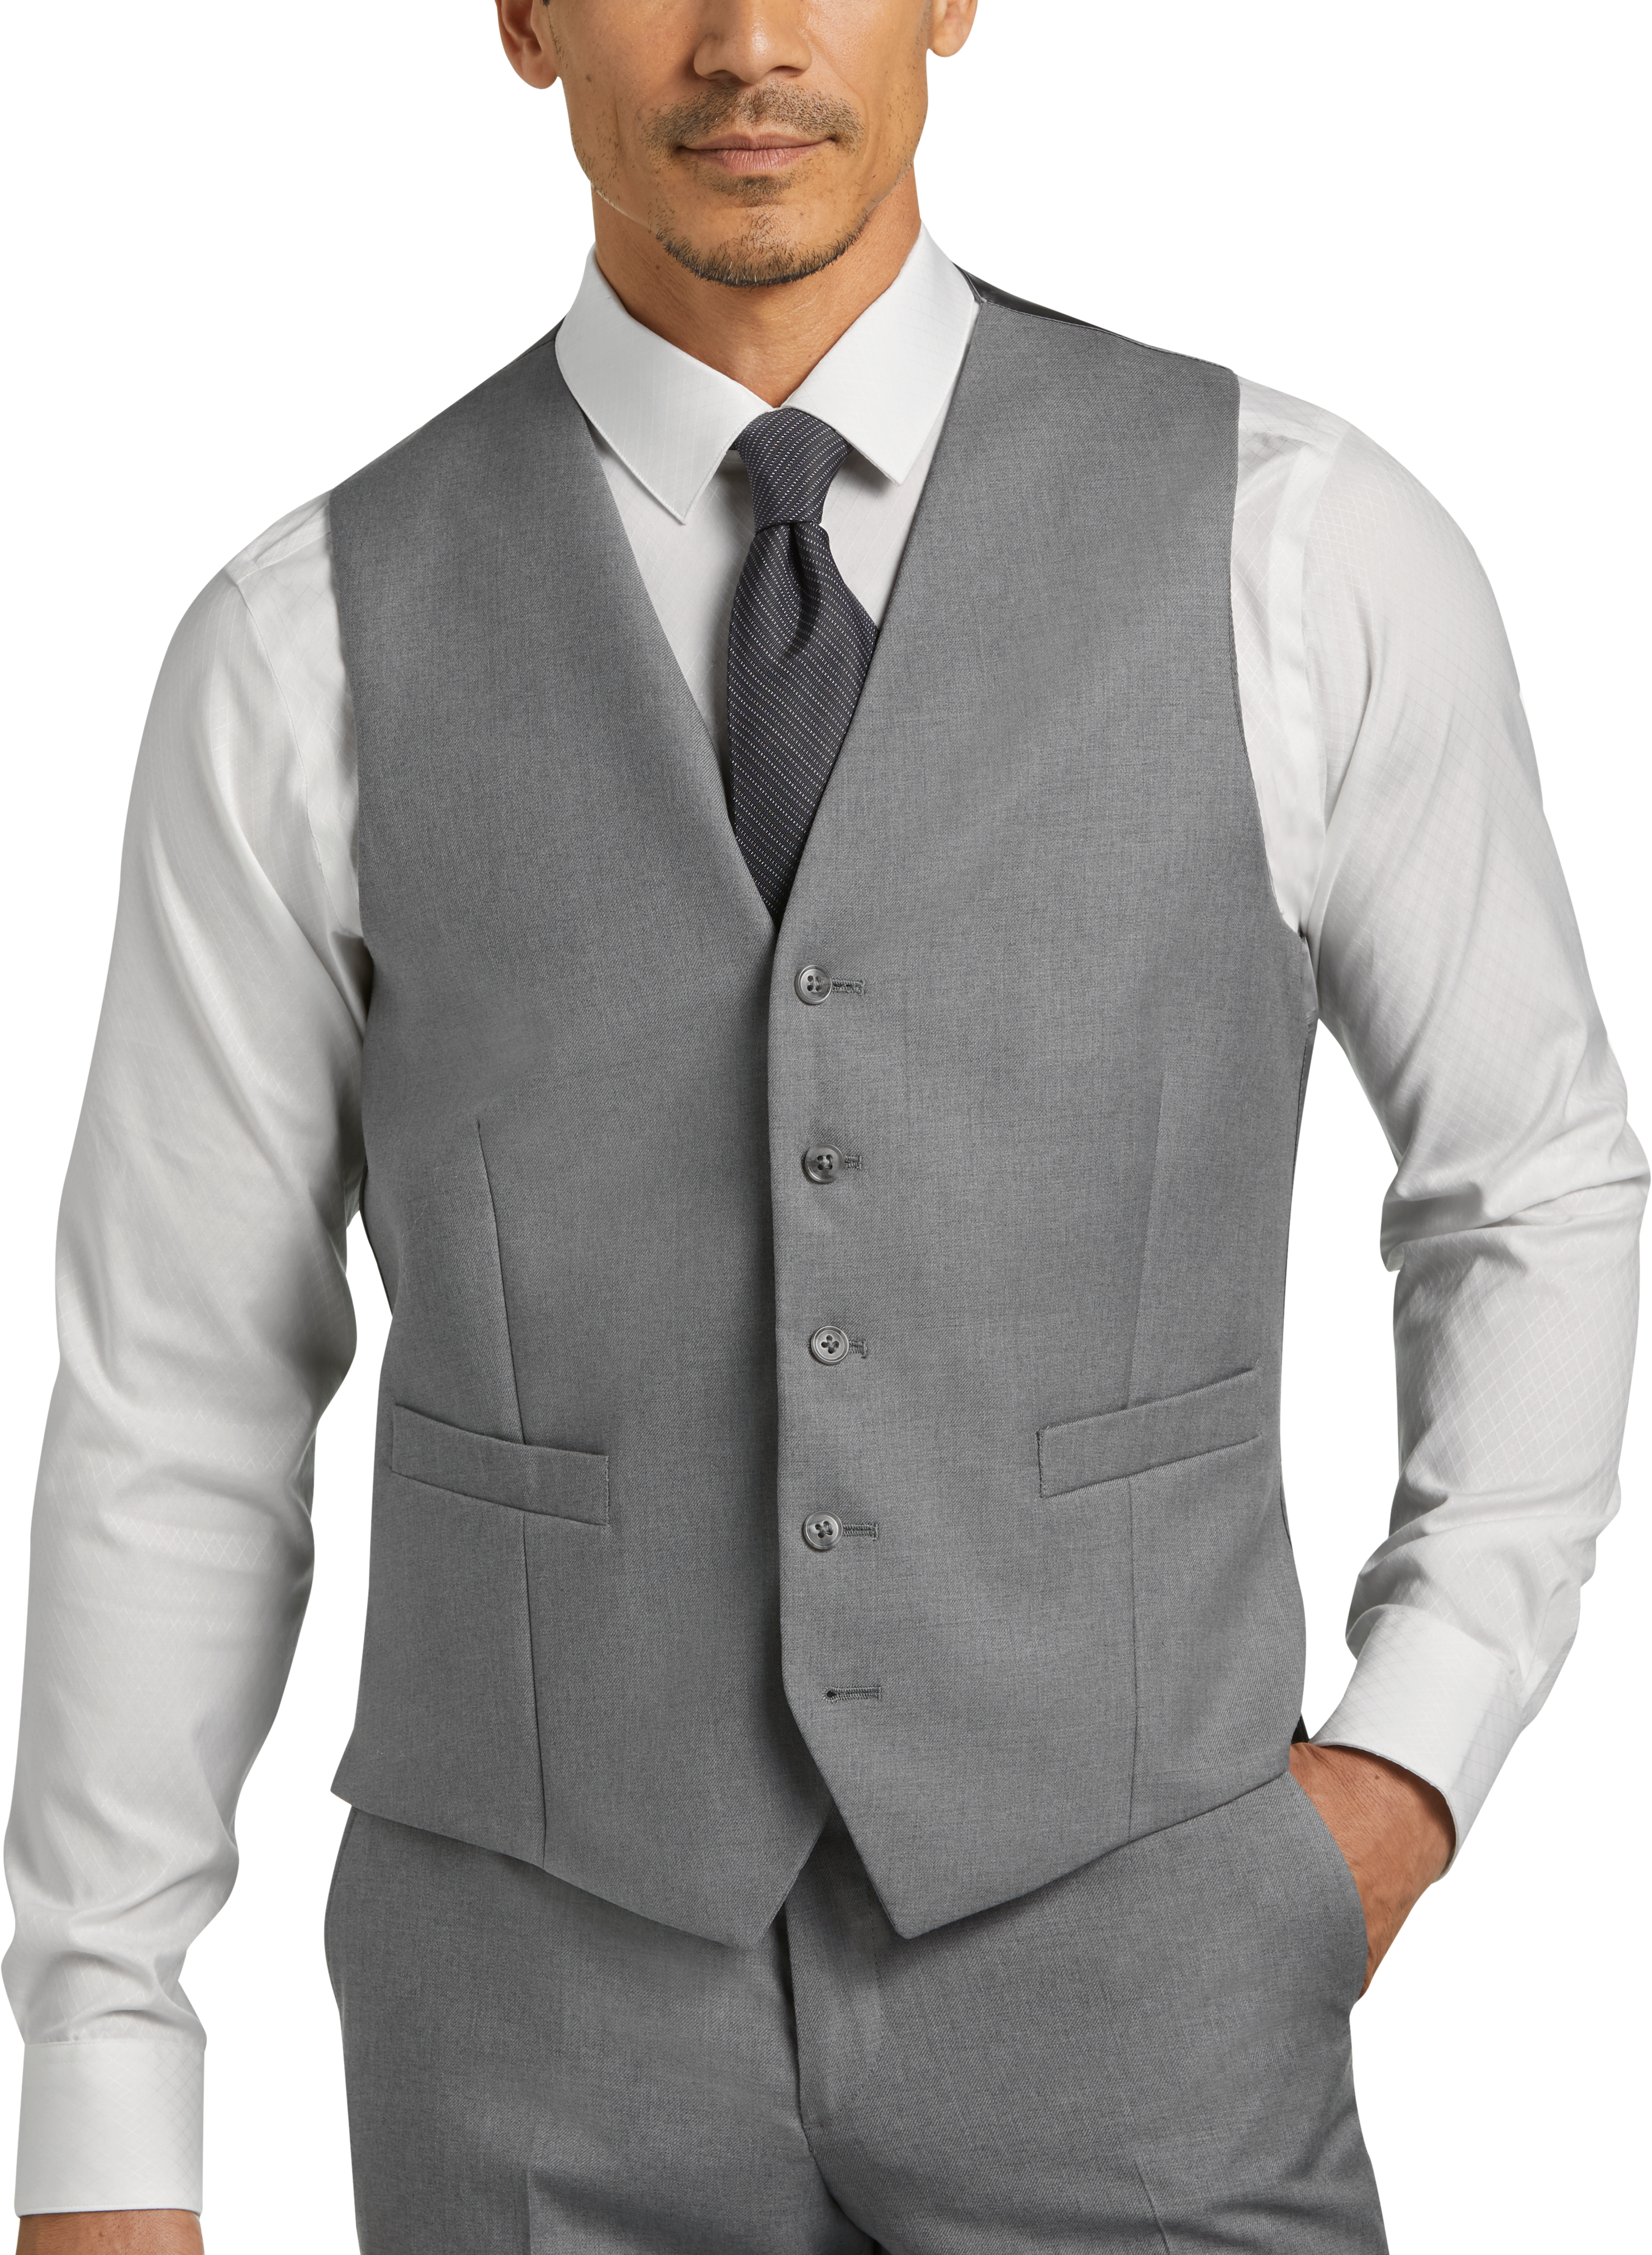 JOE Joseph Abboud Light Gray Suit Separates Vest, Executive Fit - Men's ...